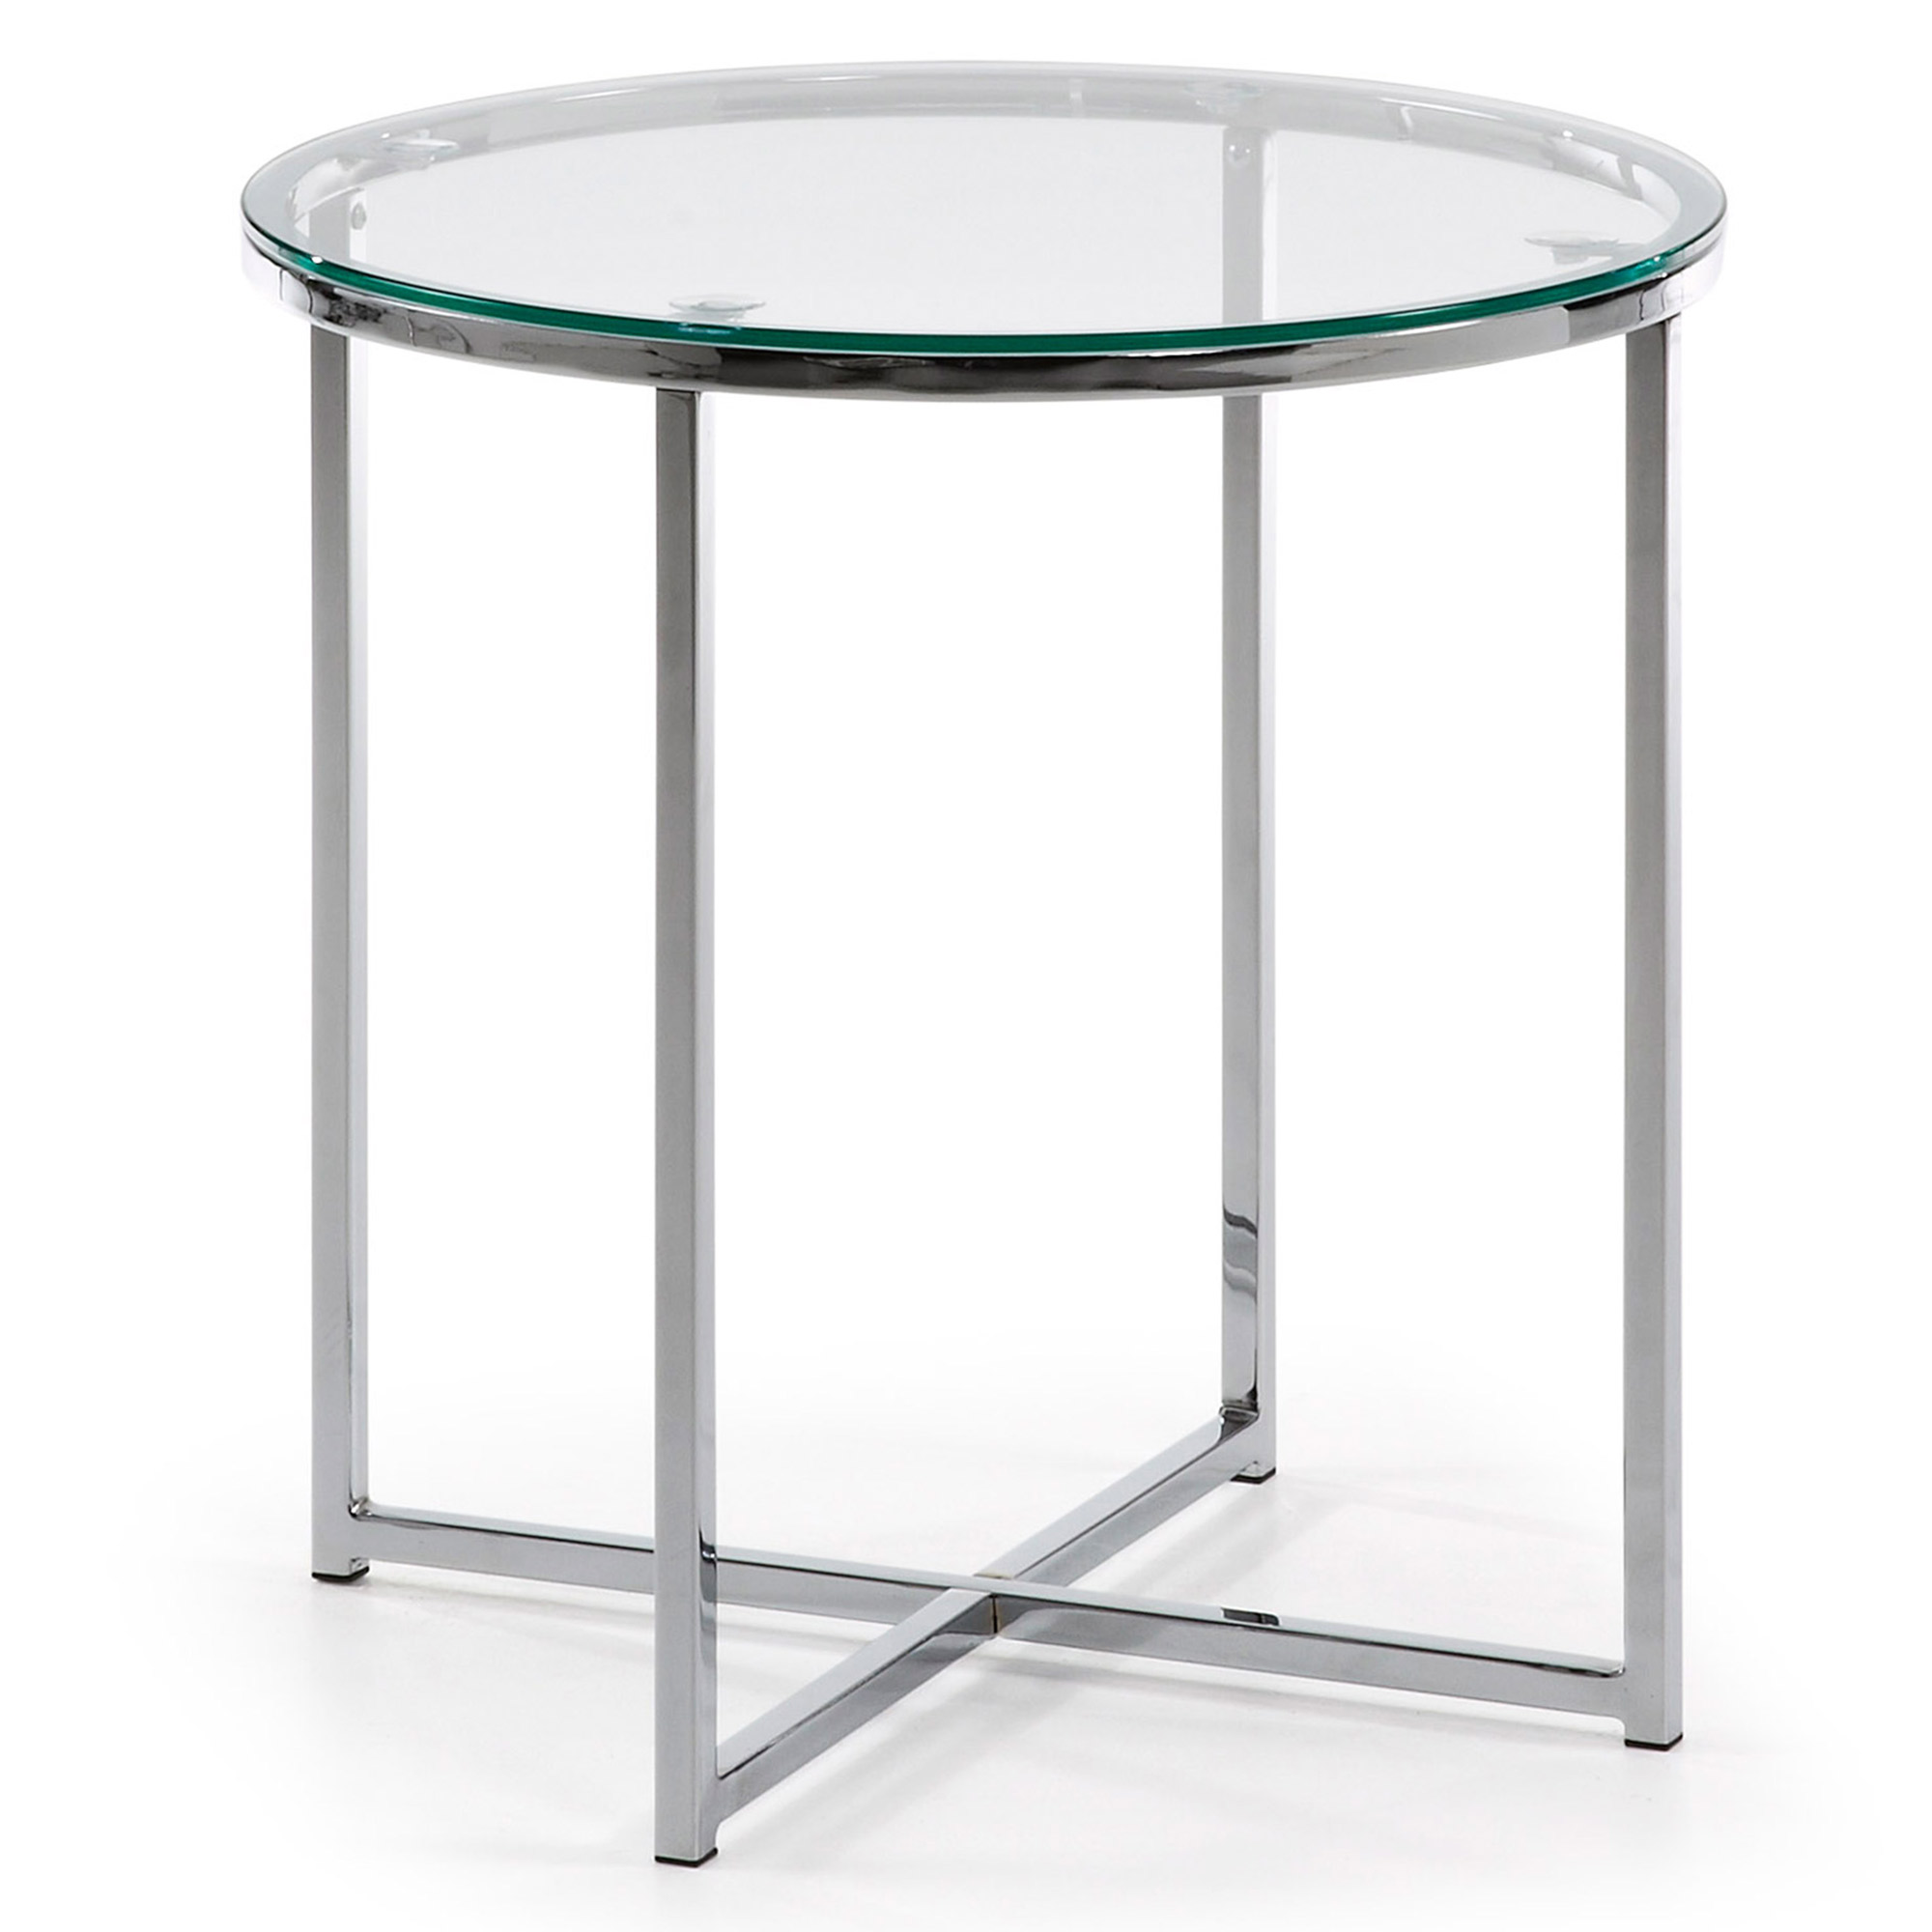 LAFORMA Divid sidebord, rund - klar glas og sølv stål (Ø50)